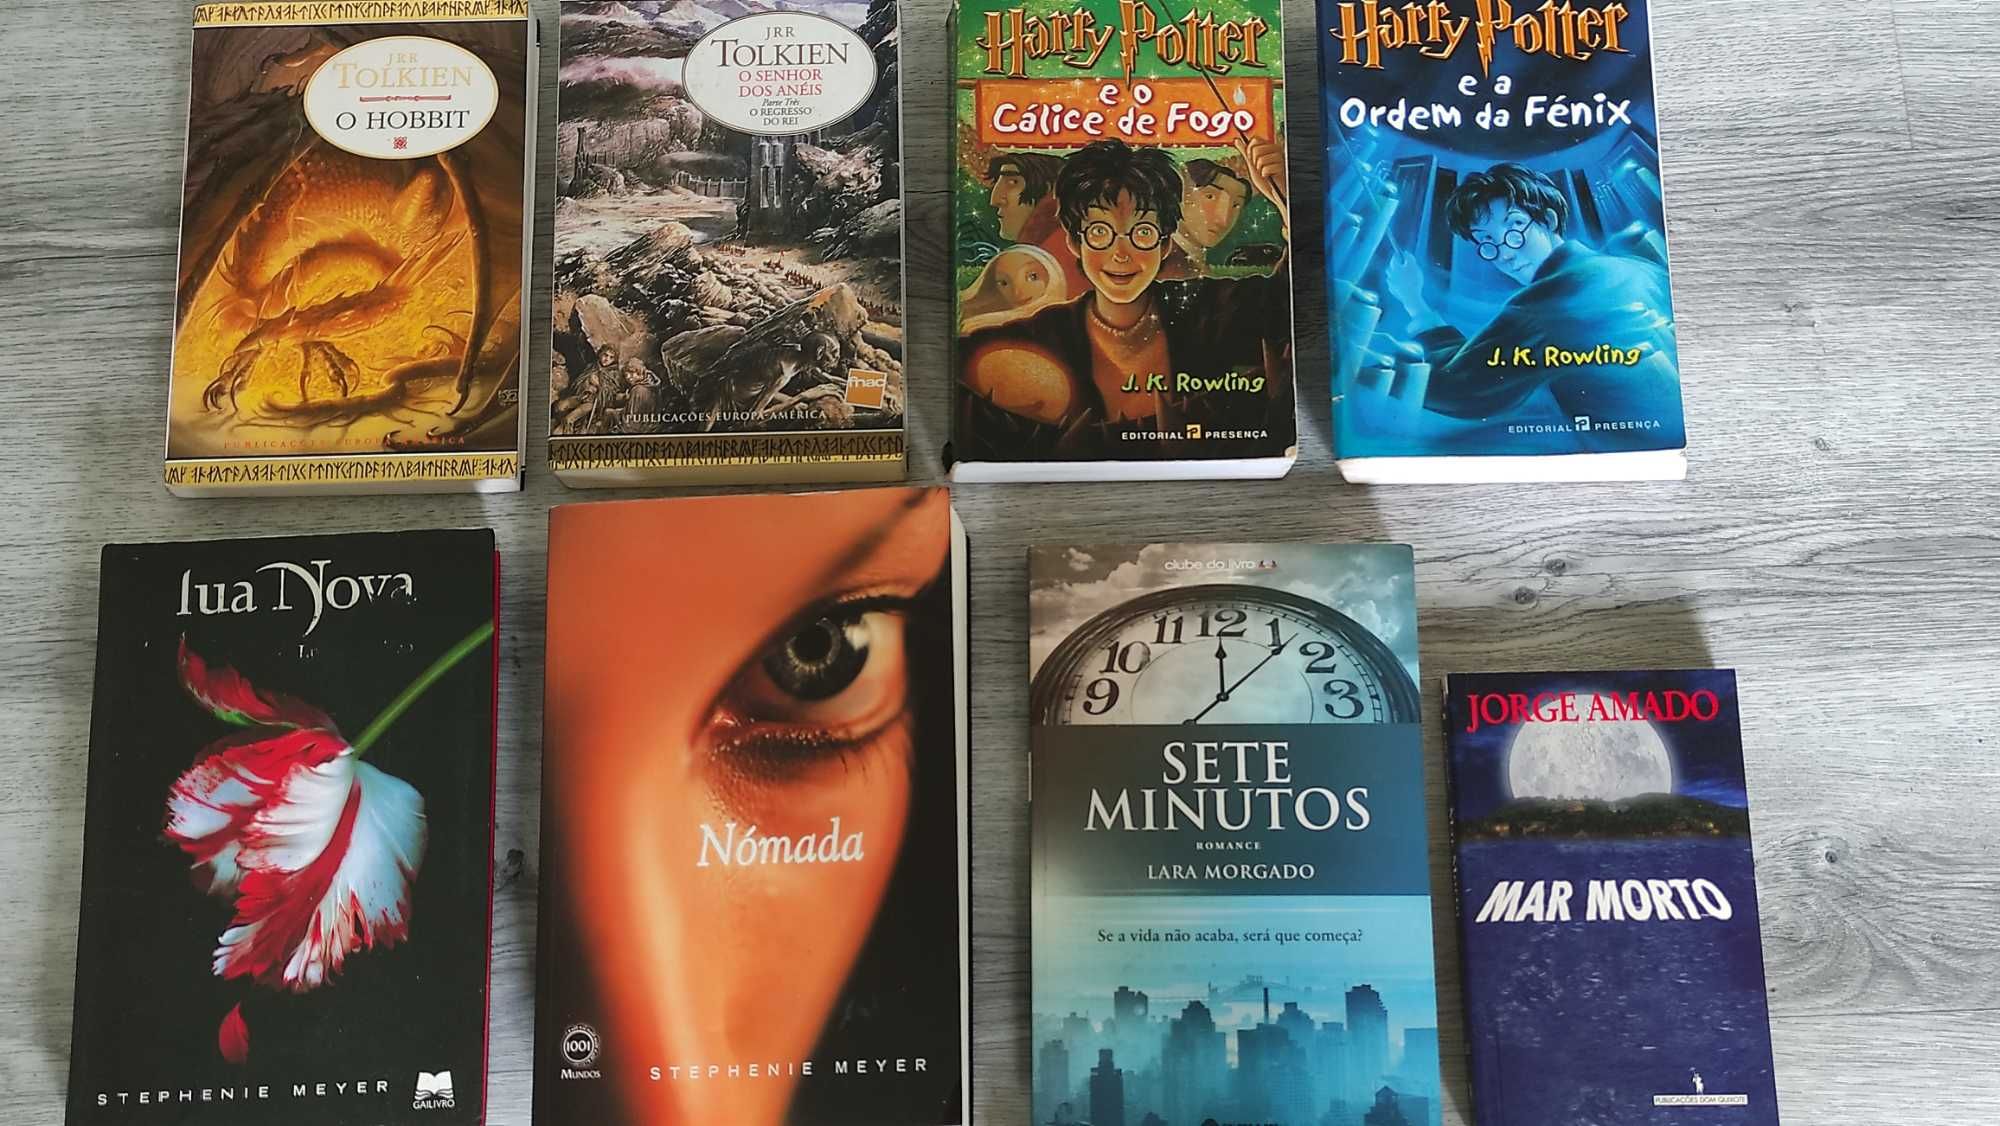 Livros em Português - Tolkien, J.K. Rowling, Stephenie Meyer, etc